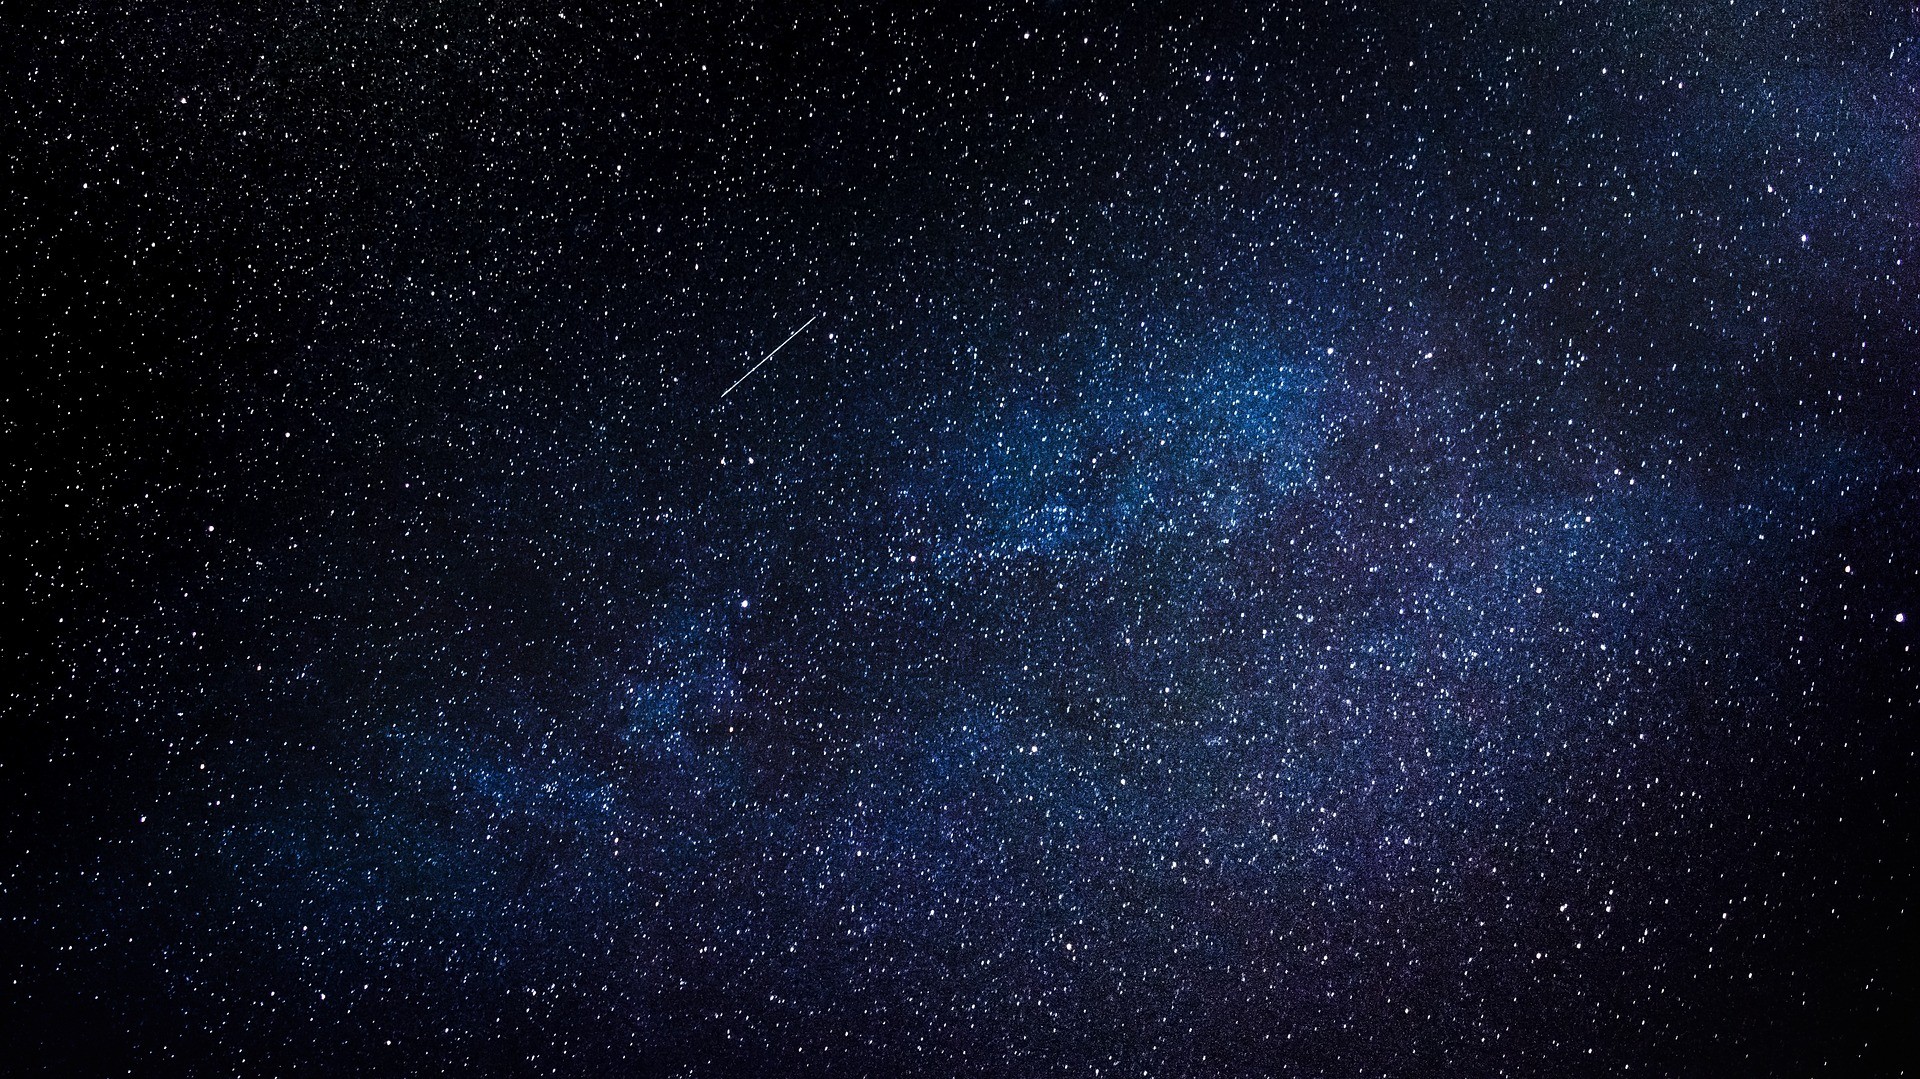 Chuva de meteoros Geminídeos é a maior atração astronômica em dezembro de 2019 (Foto: Free-Photos/Pixabay)